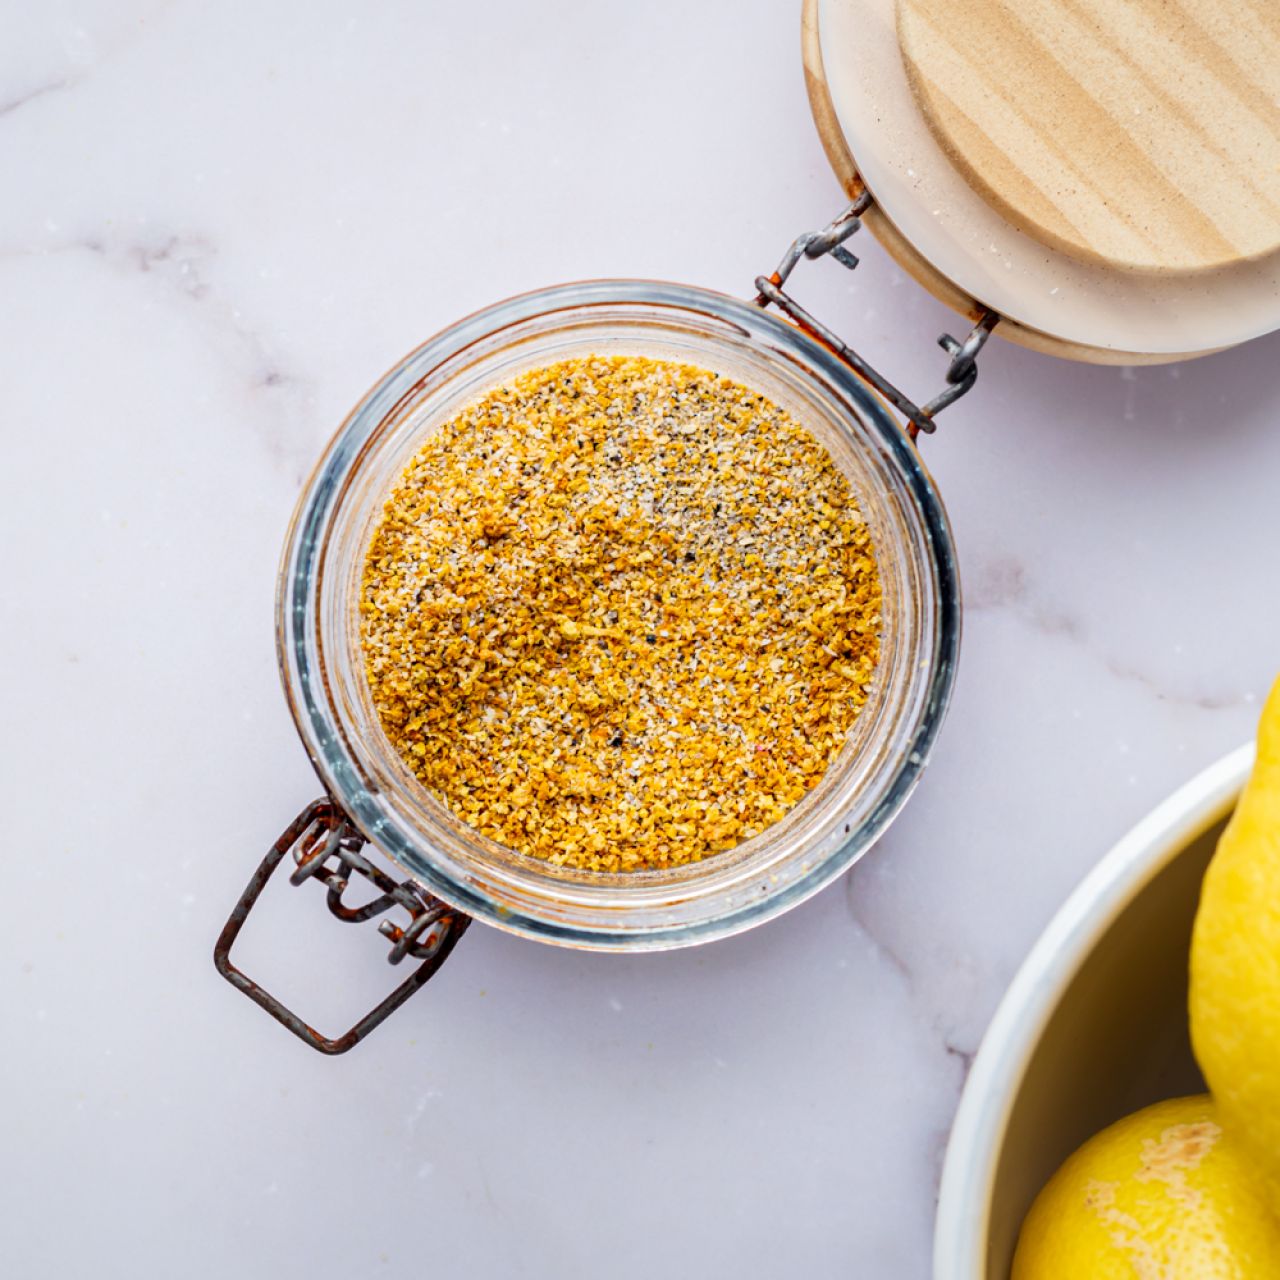 https://www.slenderkitchen.com/sites/default/files/styles/gsd-1x1/public/recipe_images/homemade-lemon-pepper-seasoning.jpg